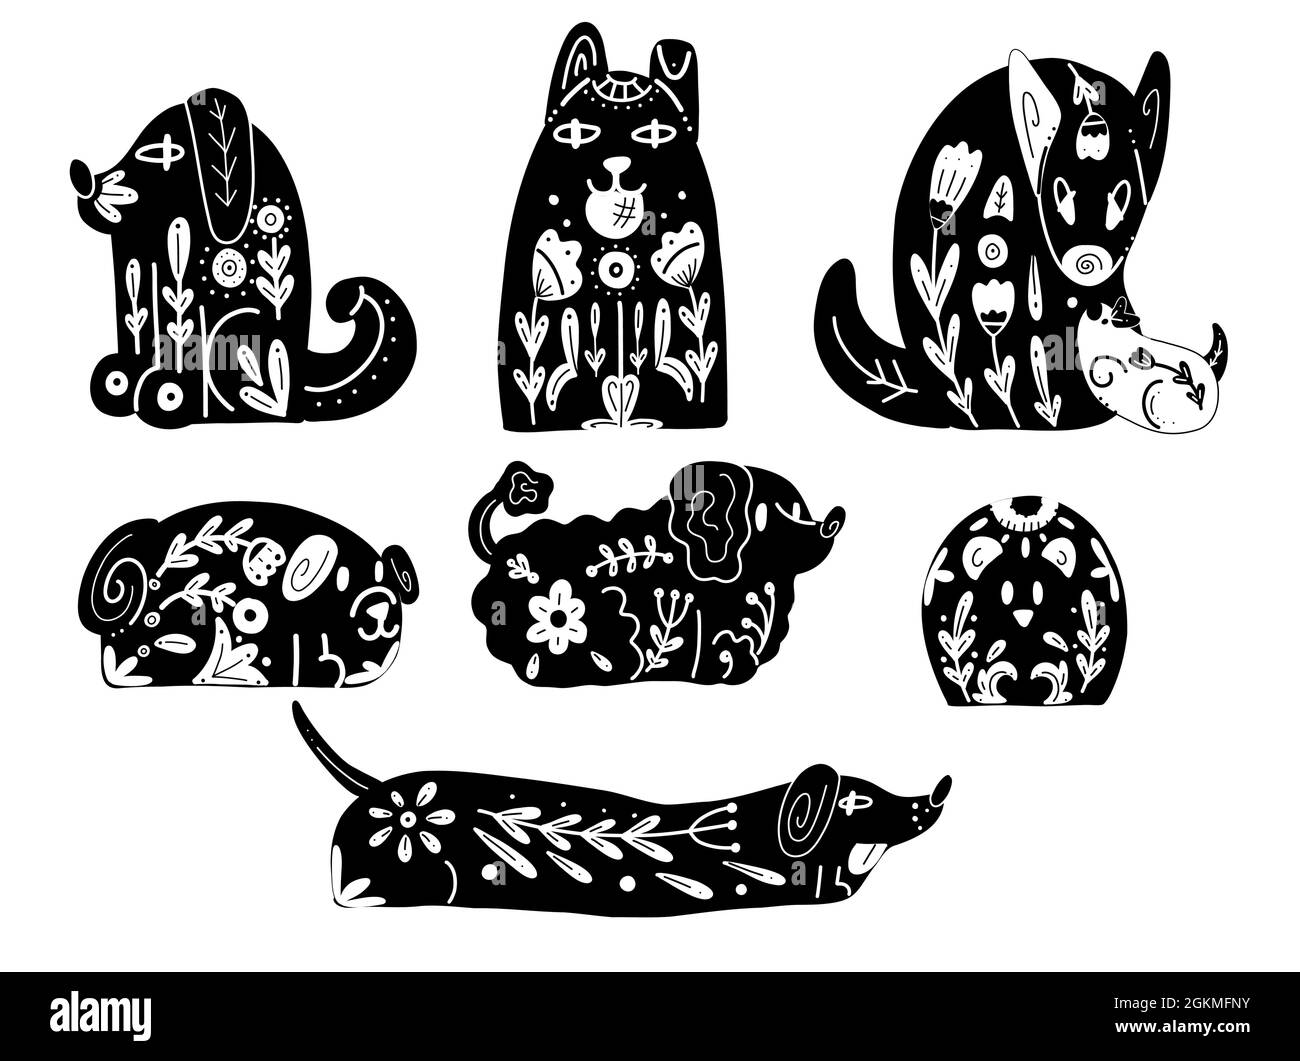 Ensemble de silhouettes noires de chiens stylisés aux motifs folkloriques et aux décorations naturelles. Imprimés noirs vectoriels de différentes marionnettes avec un motif de boho tribal Illustration de Vecteur